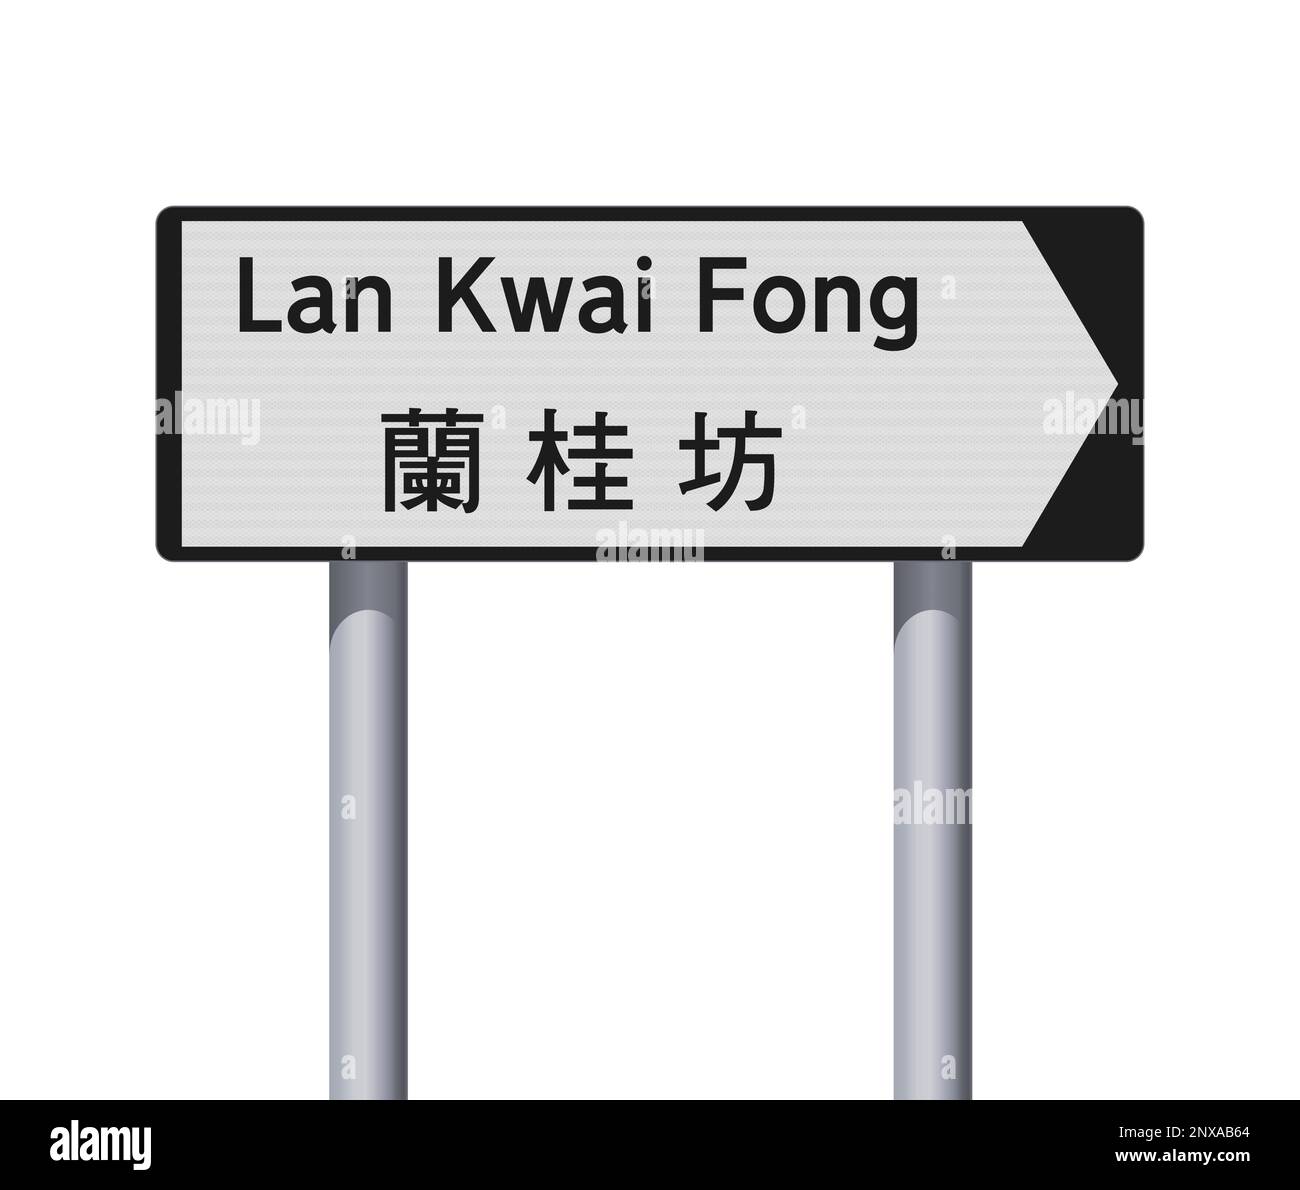 Illustration vectorielle de LAN Kwai Fong (Hong Kong) avec traduction en chinois sur panneau de signalisation blanc et noir Illustration de Vecteur